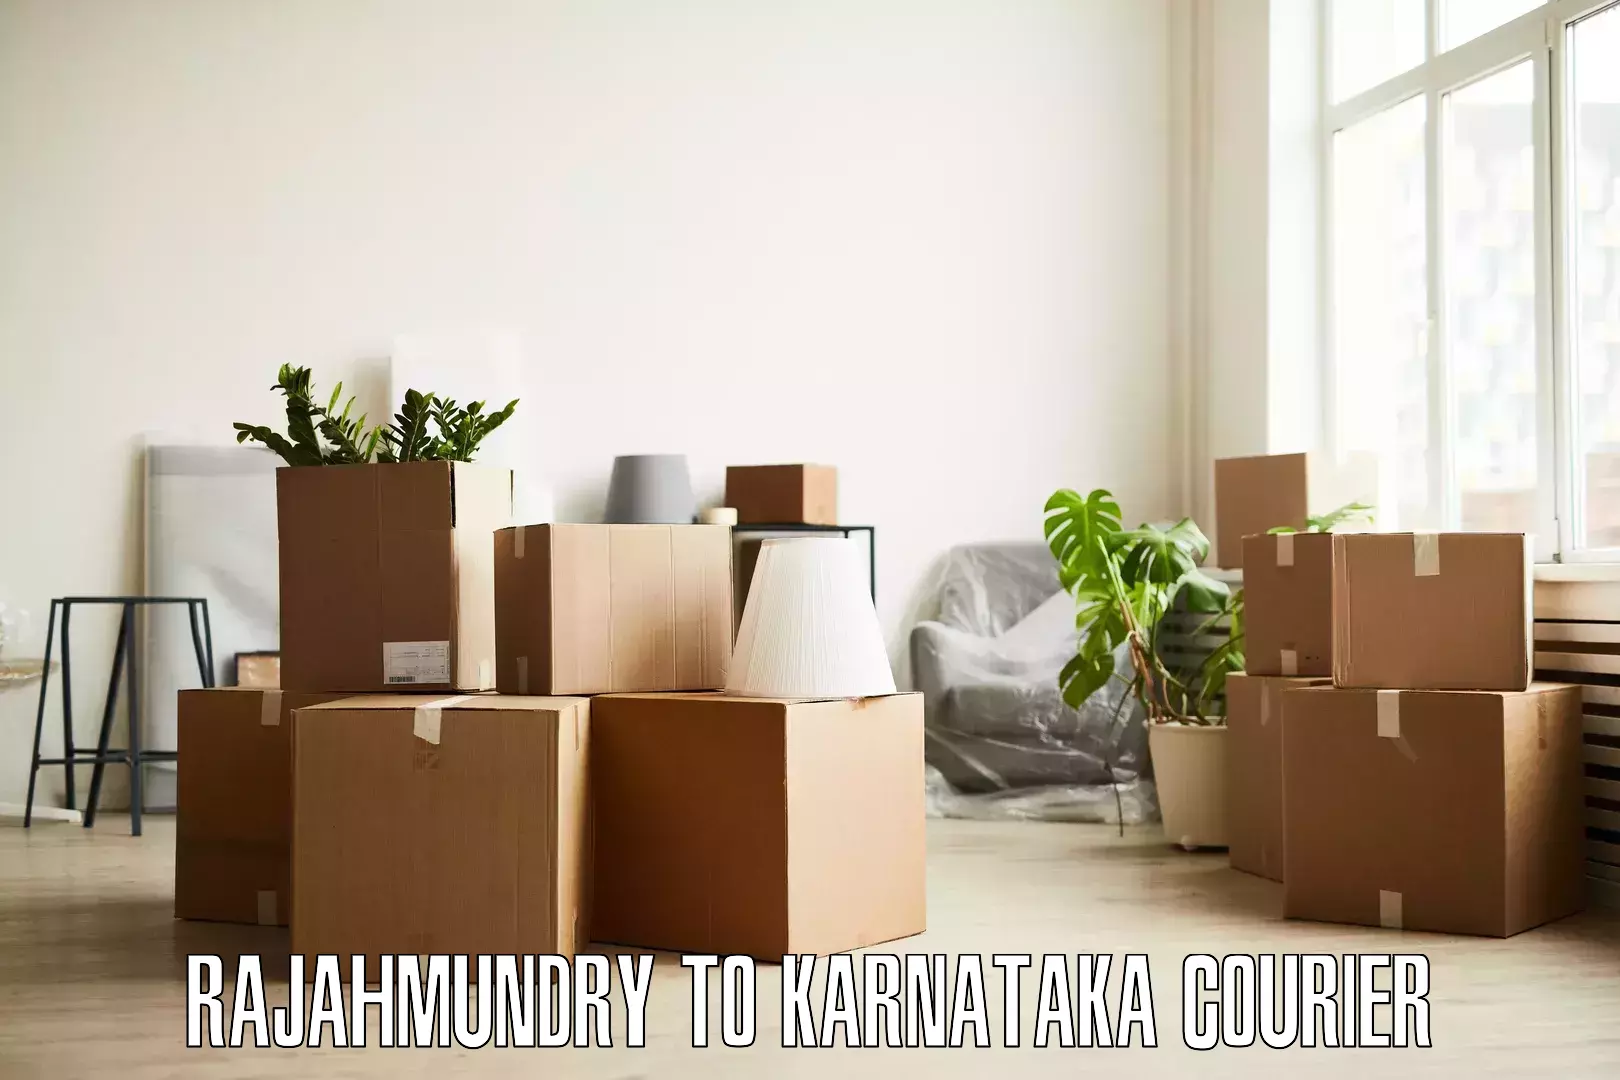 Furniture moving experts Rajahmundry to Yenepoya Mangalore